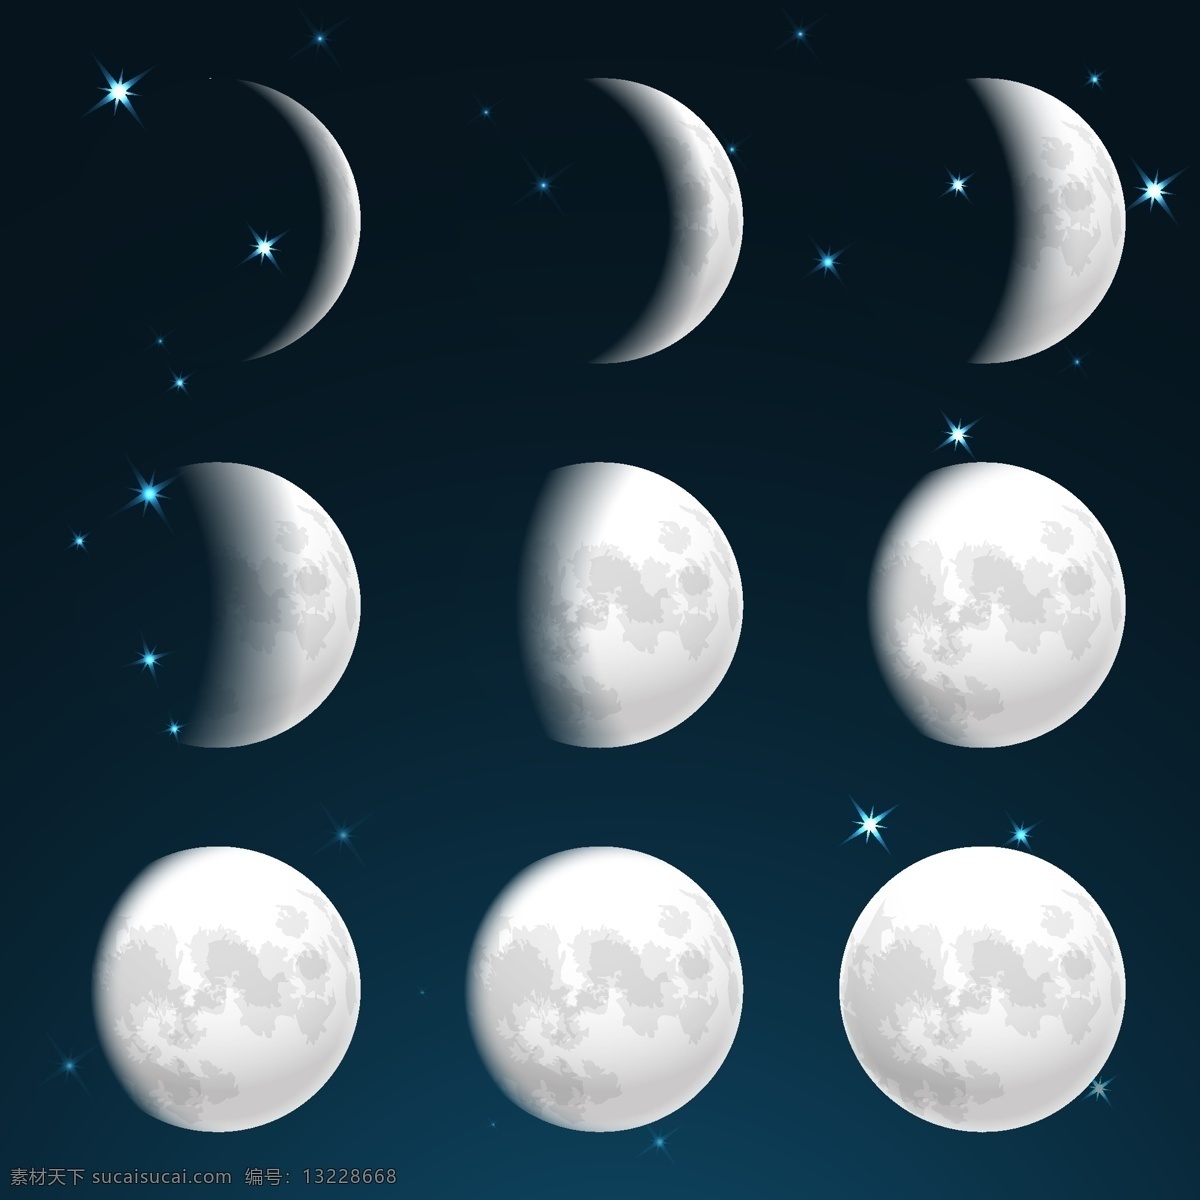 月亮 月球图片 月球 月食 天文 天空 星星 过程 月偏食 月全食 弯月 风景 自然景观 自然风景 气氛 大气 神秘 梦 自然 光 月光 黑暗 白云 云朵 满月 十五的月亮 拳头 手印